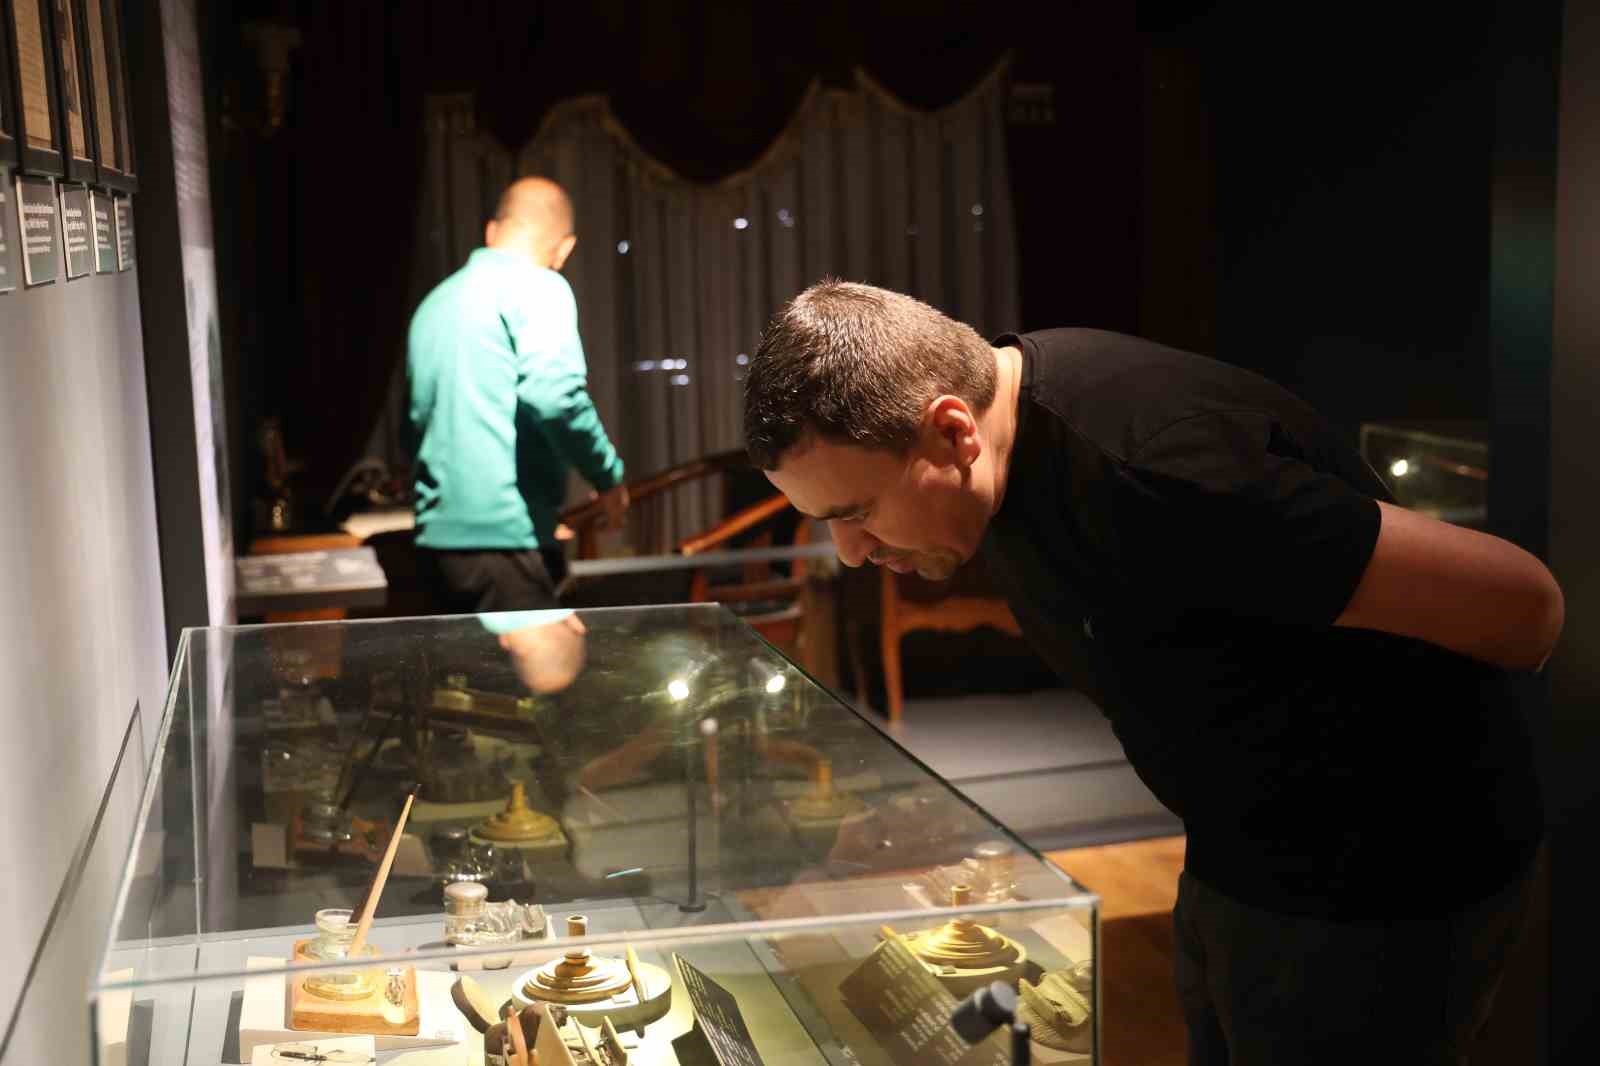 Harput Basın Müzesi’ni 9 günde 15 bin kişi ziyaret etti
